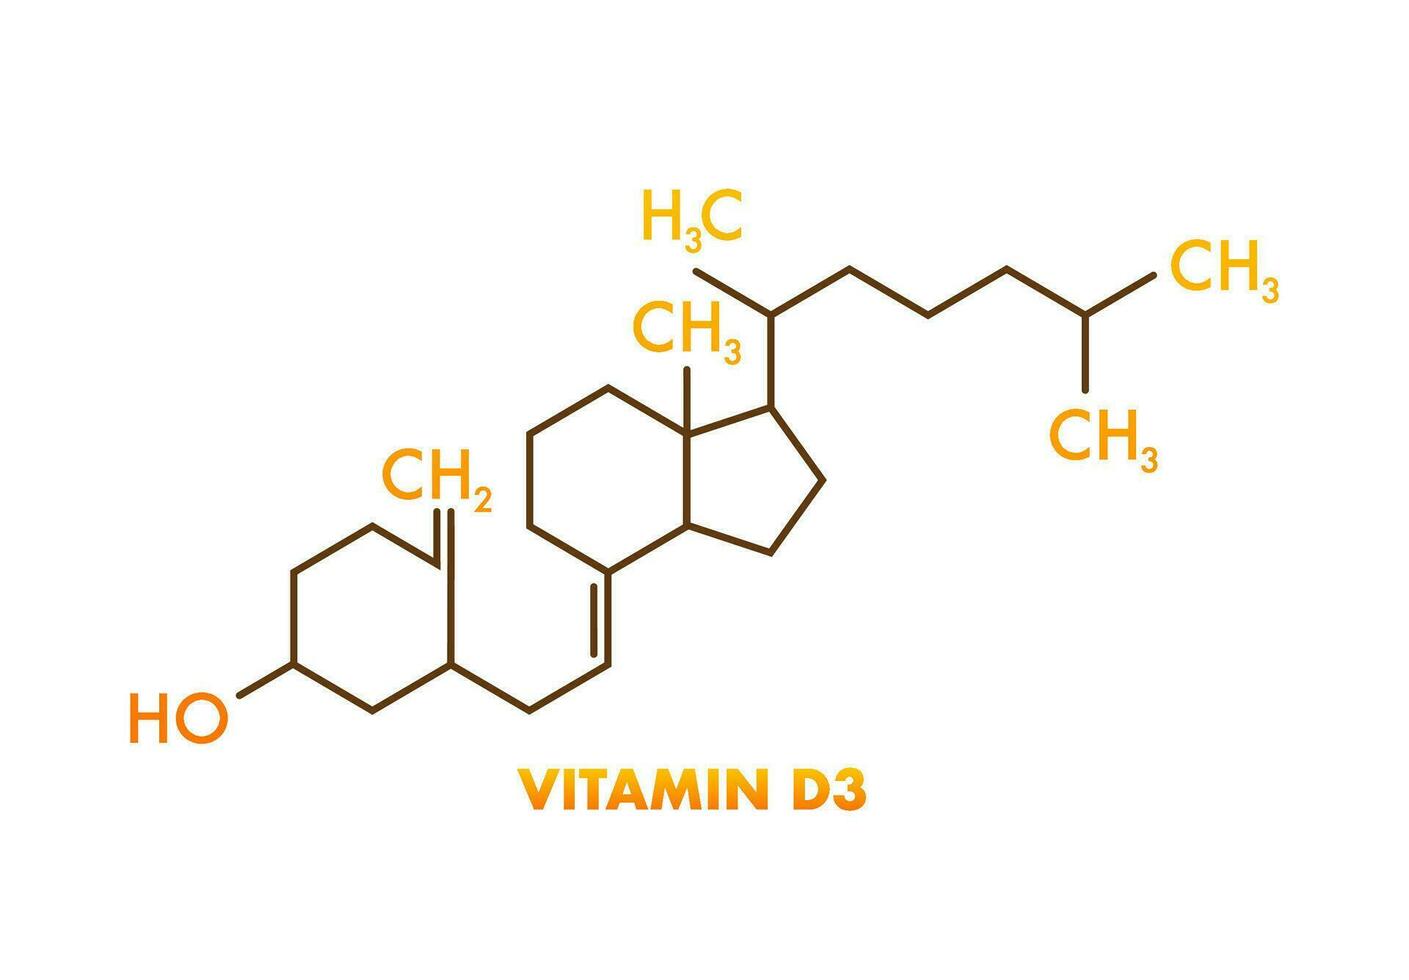 vitamine d3 formule, génial conception pour tout fins. vecteur illustration isolé.